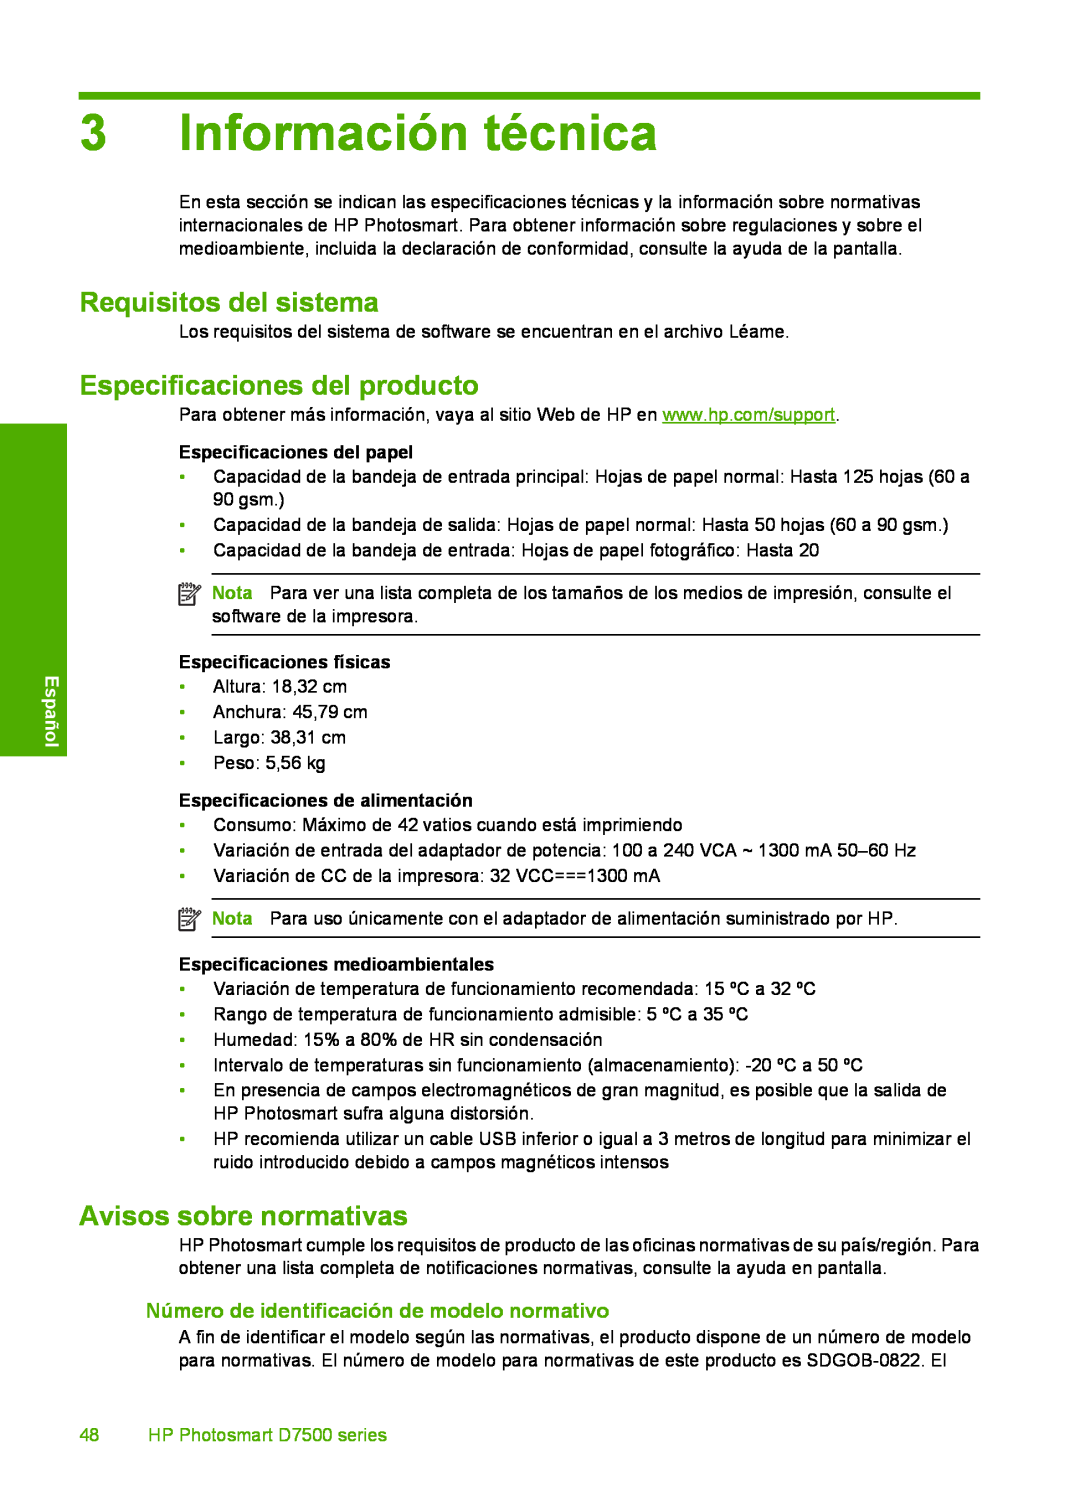 HP D7560 Información técnica, Requisitos del sistema, Especificaciones del producto, Avisos sobre normativas, Español 